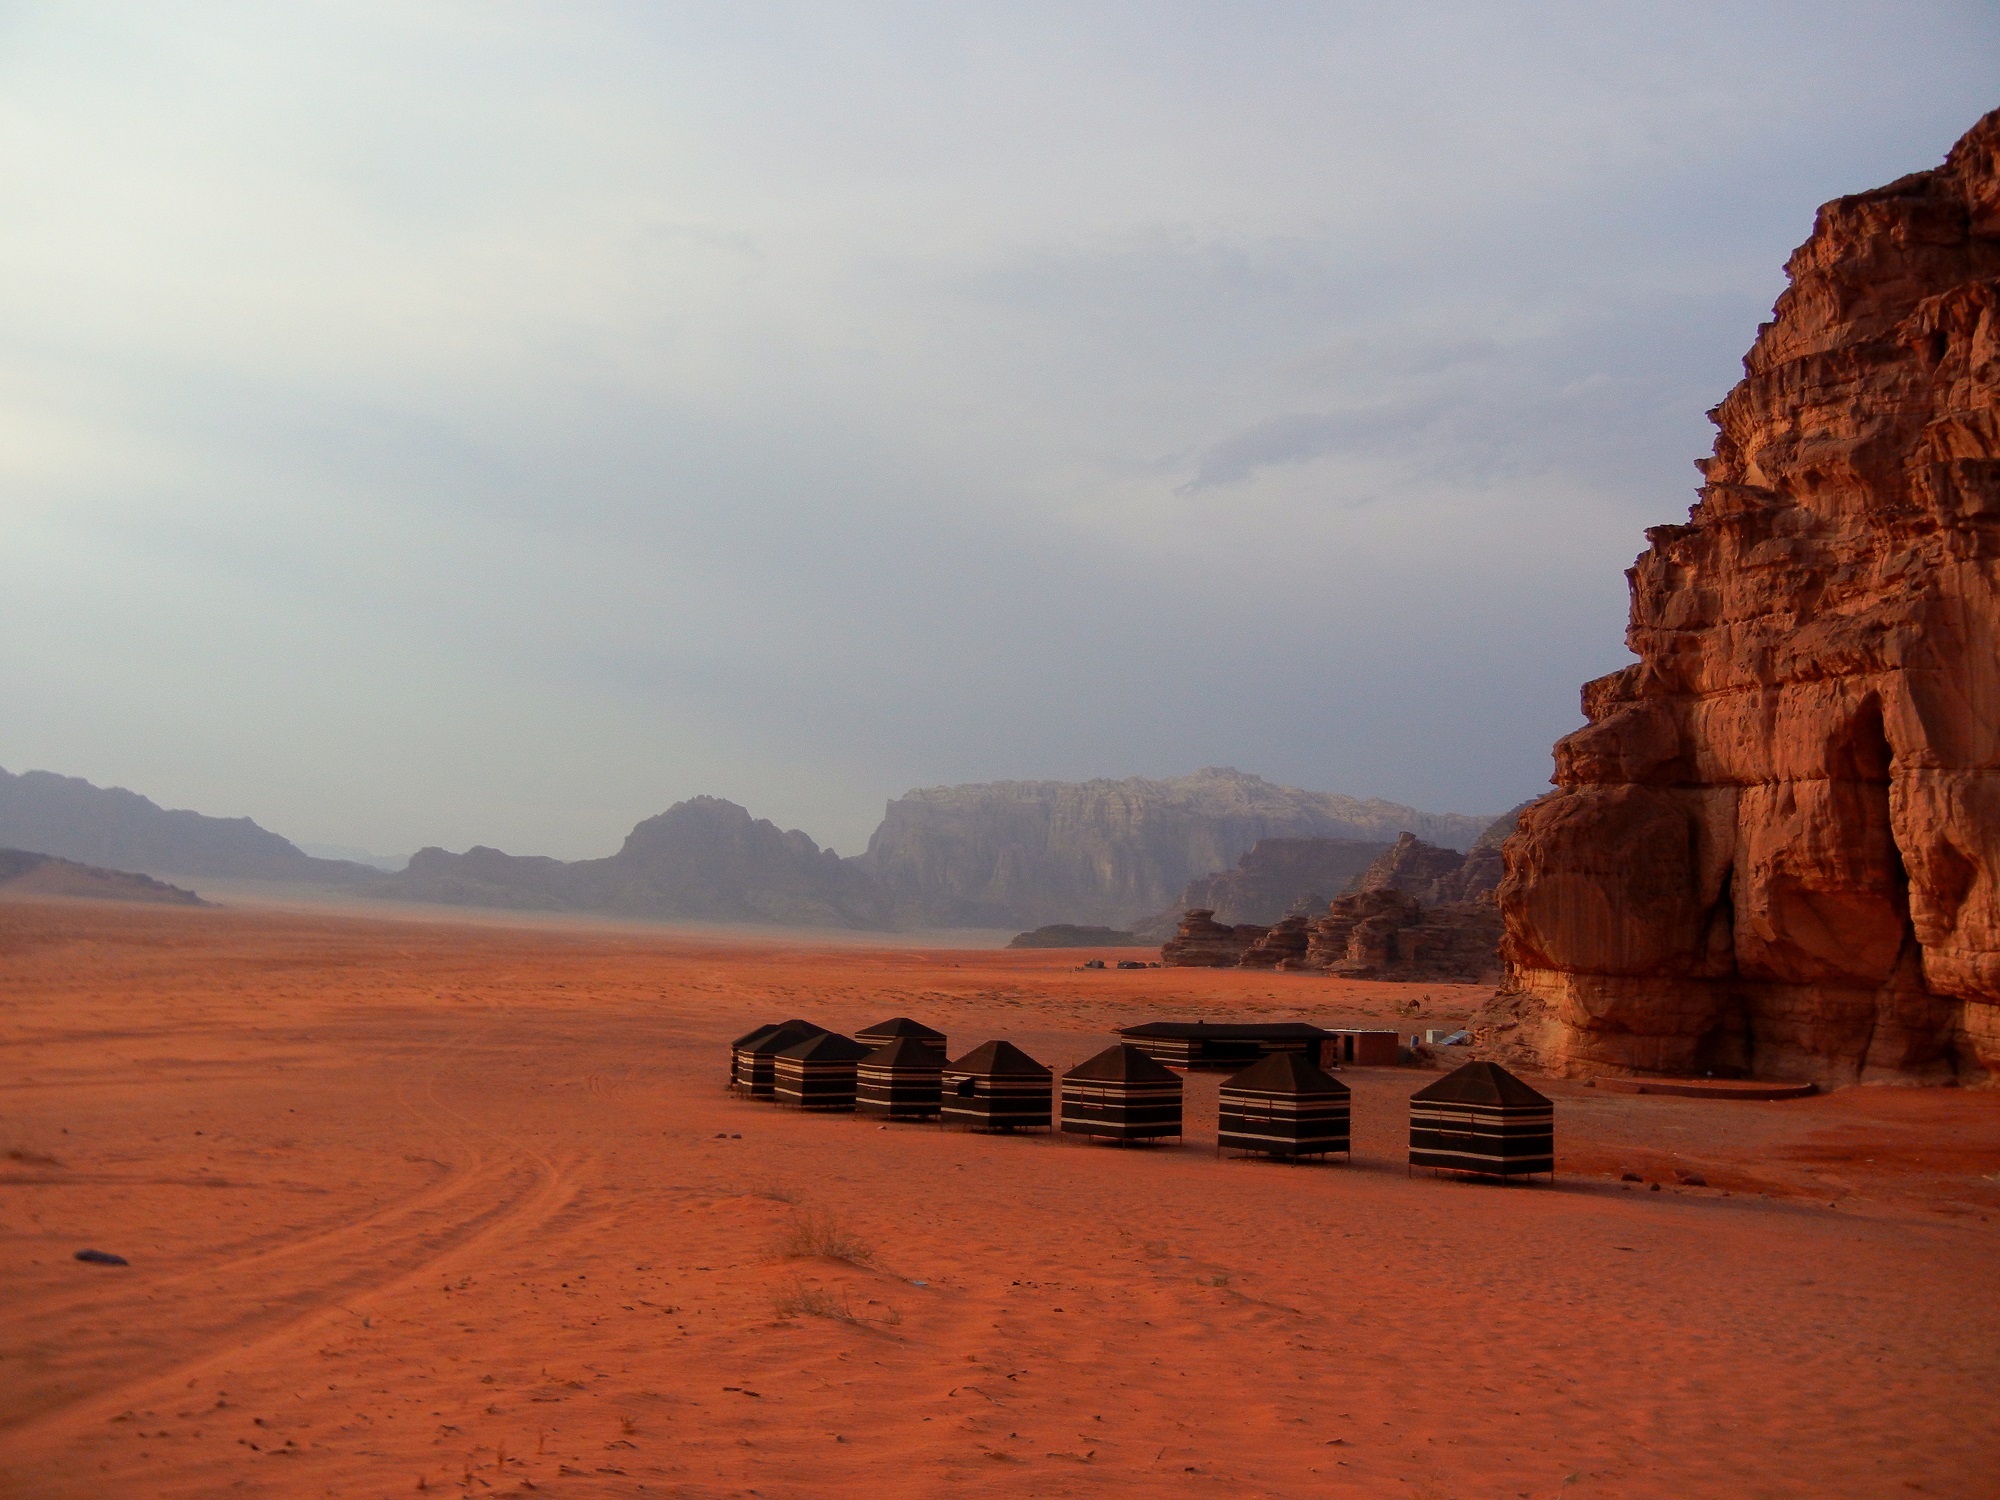 Jordánsko - Red desert camp (Wadi Rum)